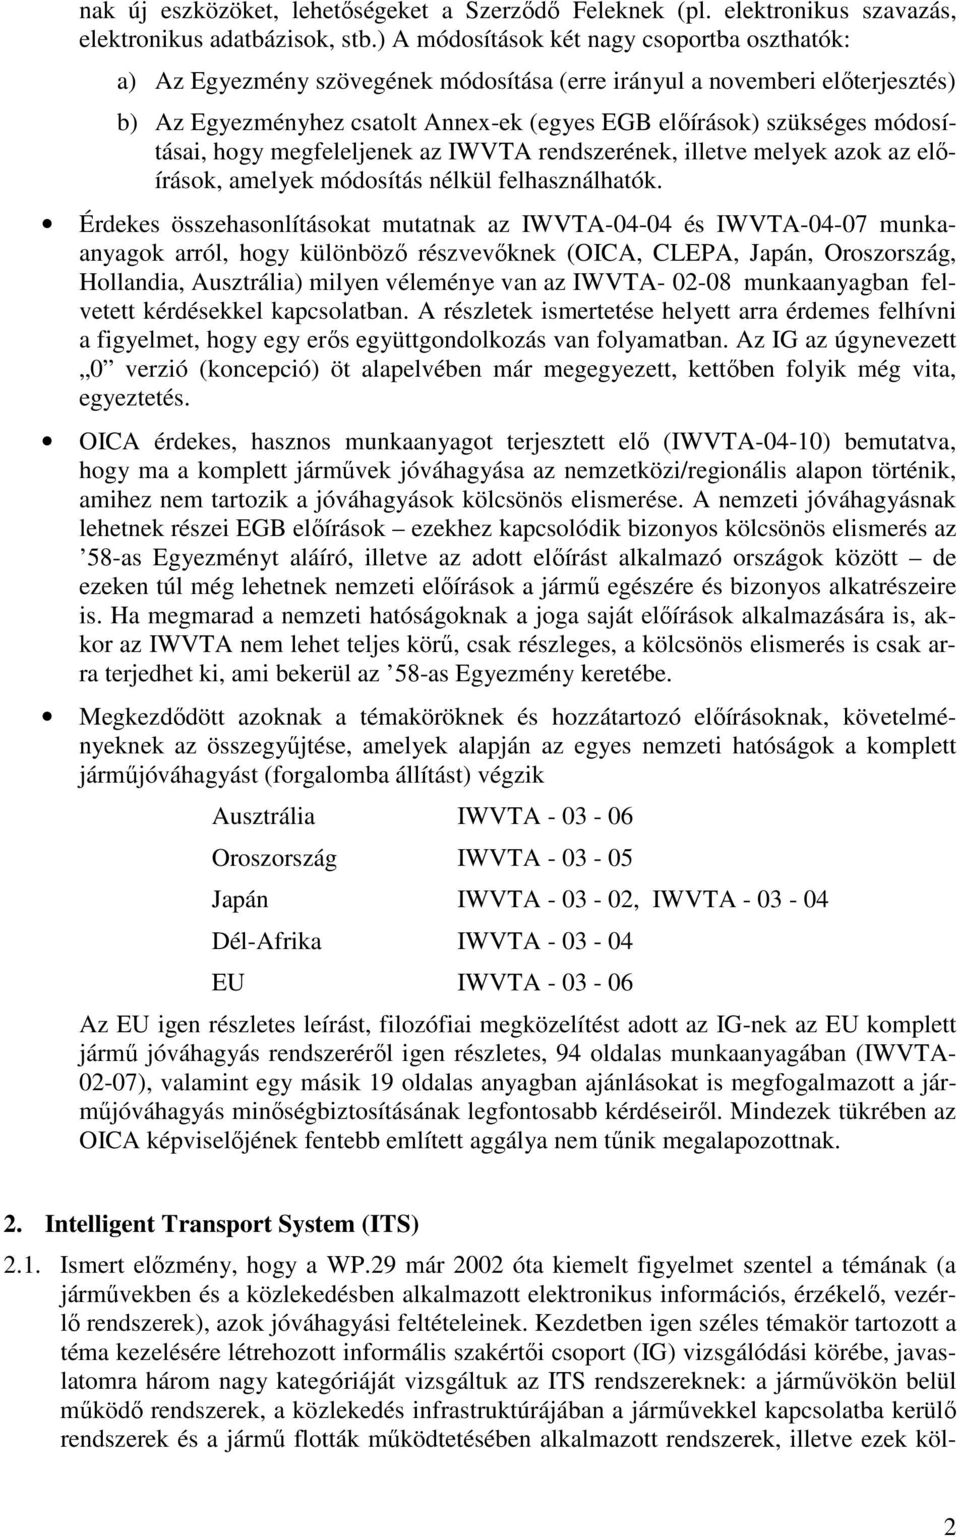 módosításai, hogy megfeleljenek az IWVTA rendszerének, illetve melyek azok az elıírások, amelyek módosítás nélkül felhasználhatók.